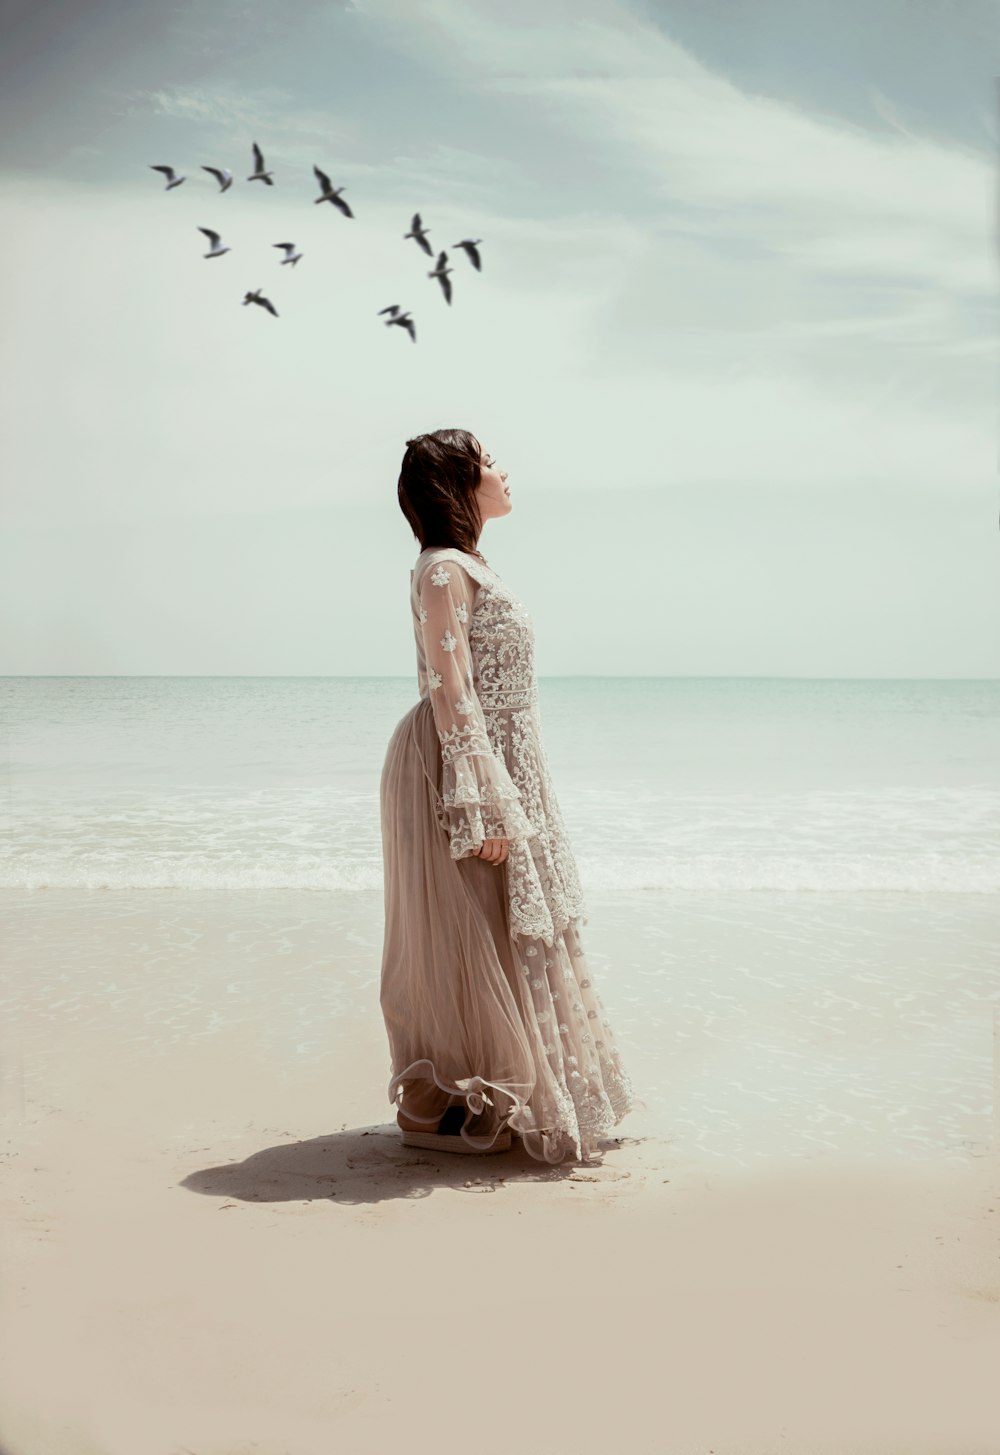 Mujer en vestido blanco caminando en la playa durante el día